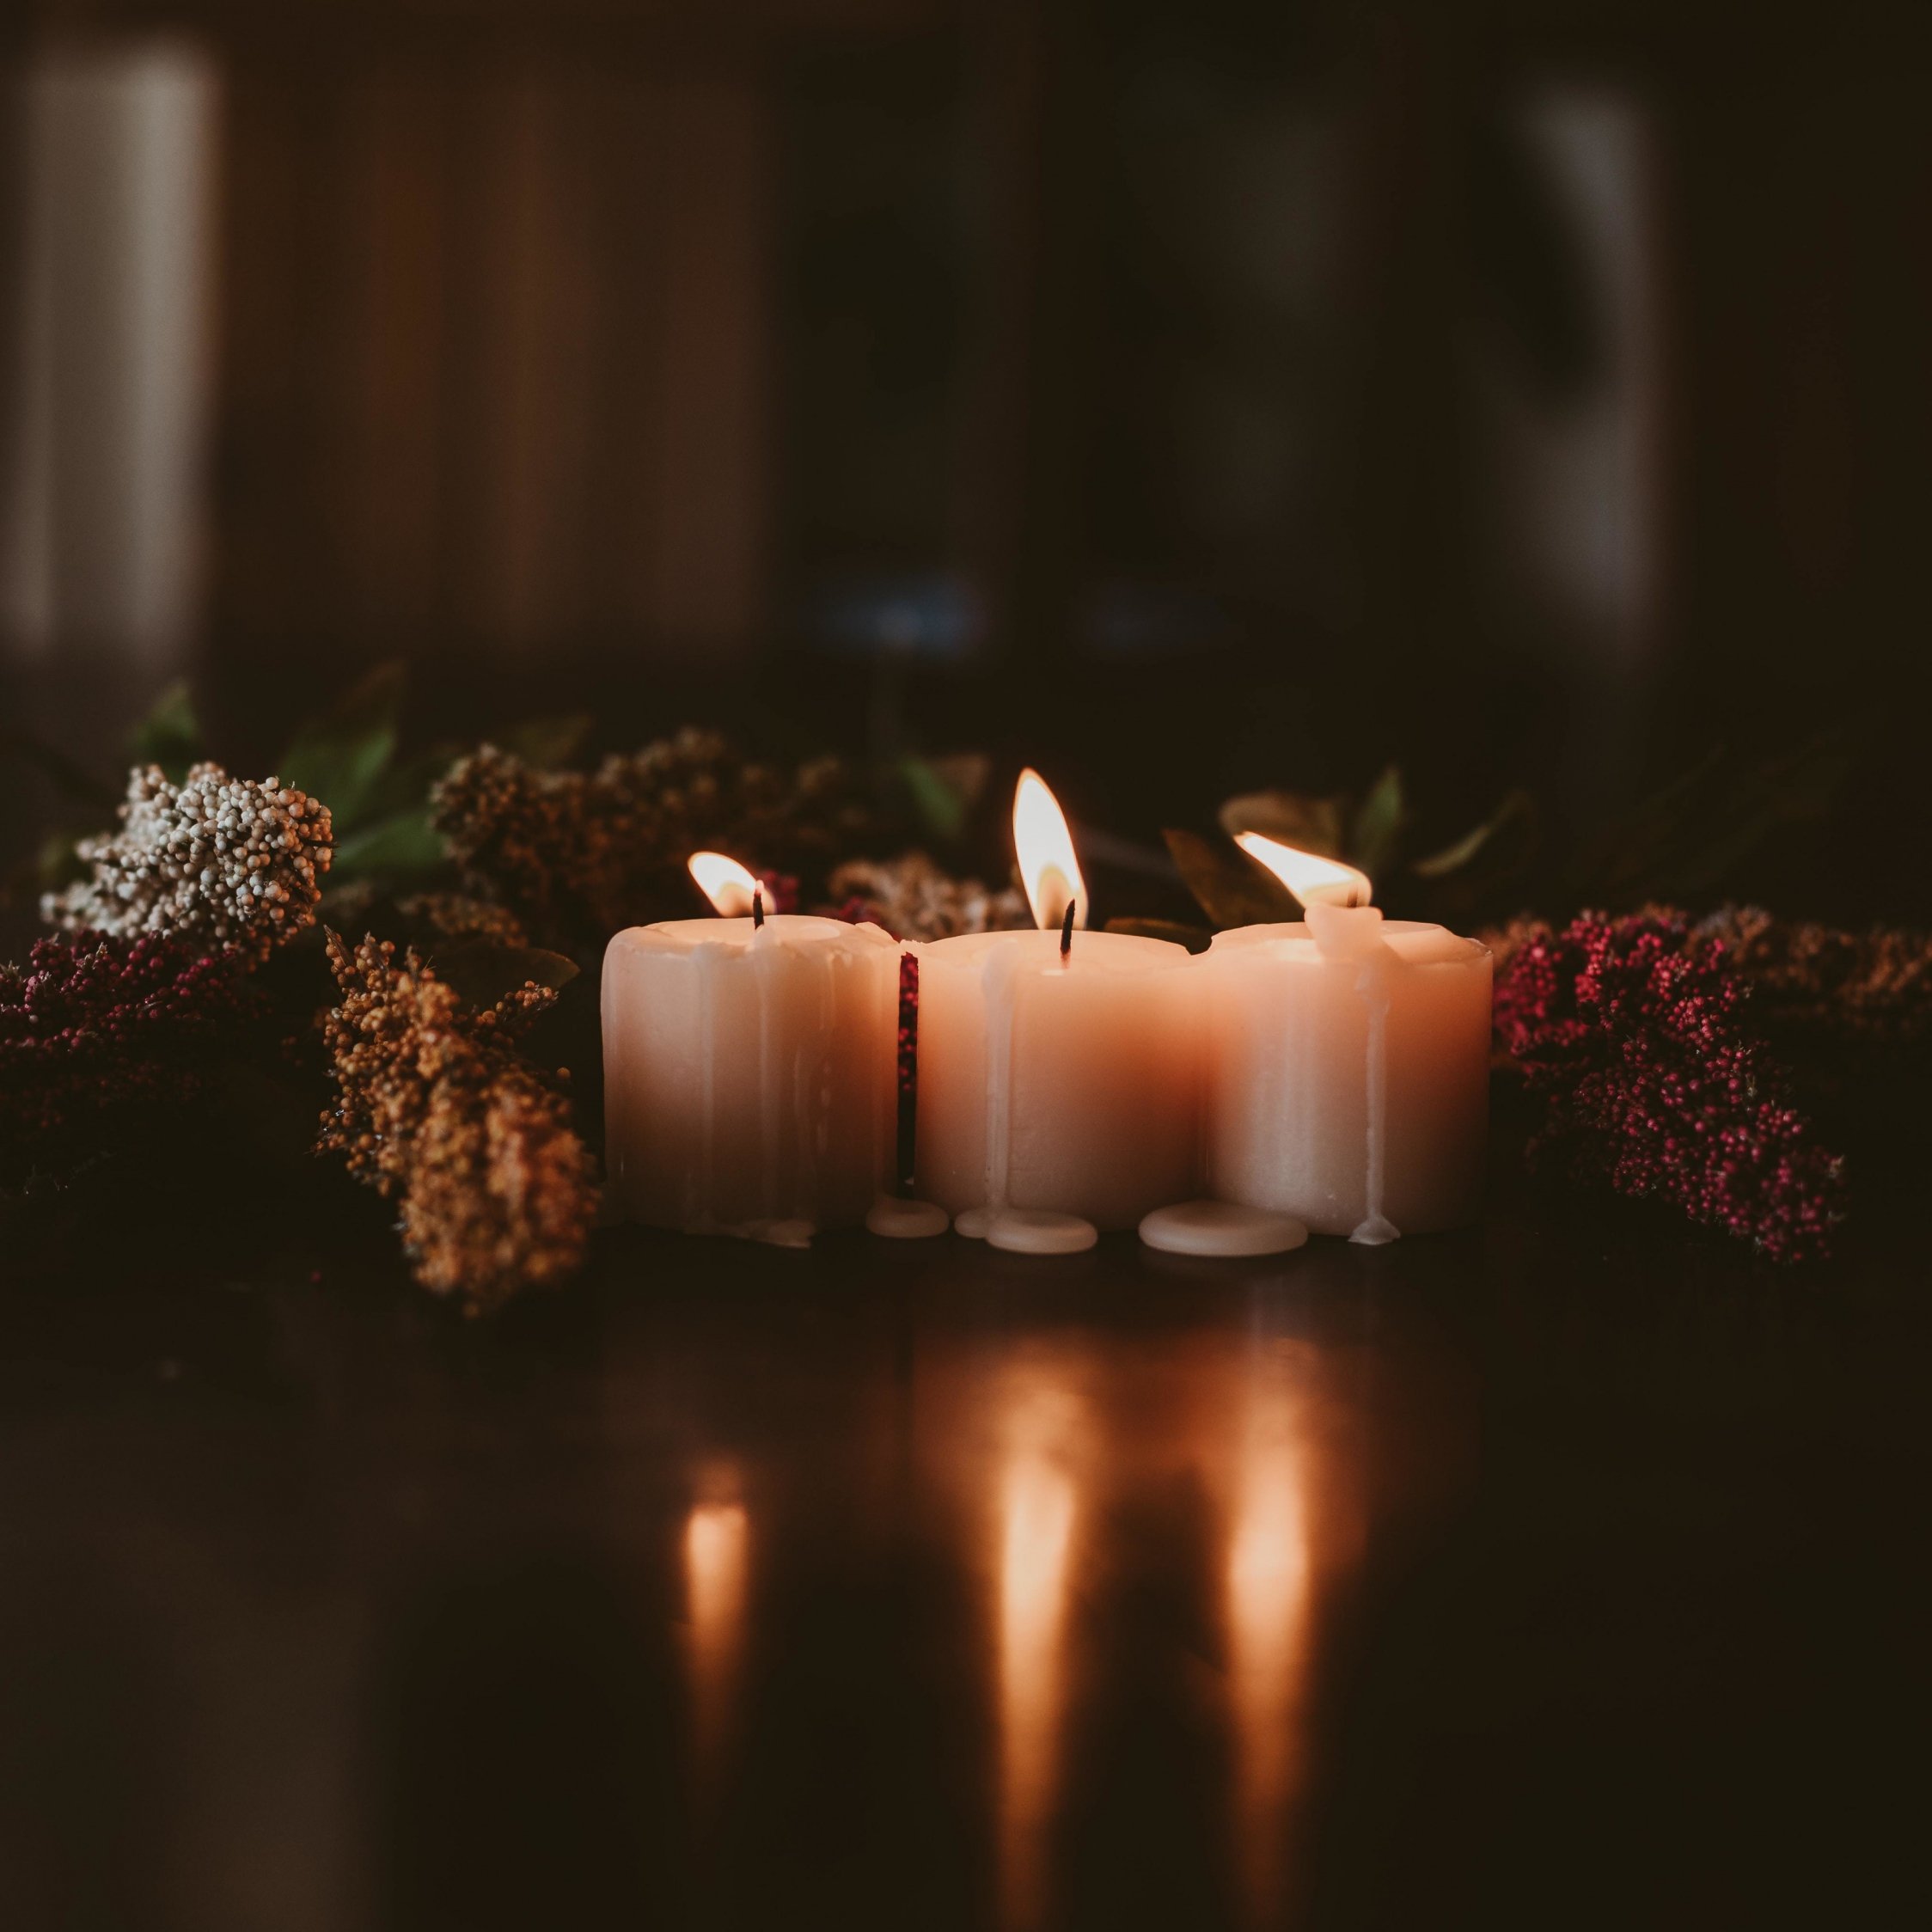 عکس پروفایل شمع سفید با زمینه تیره بدون نوشته  برای تسلیت 